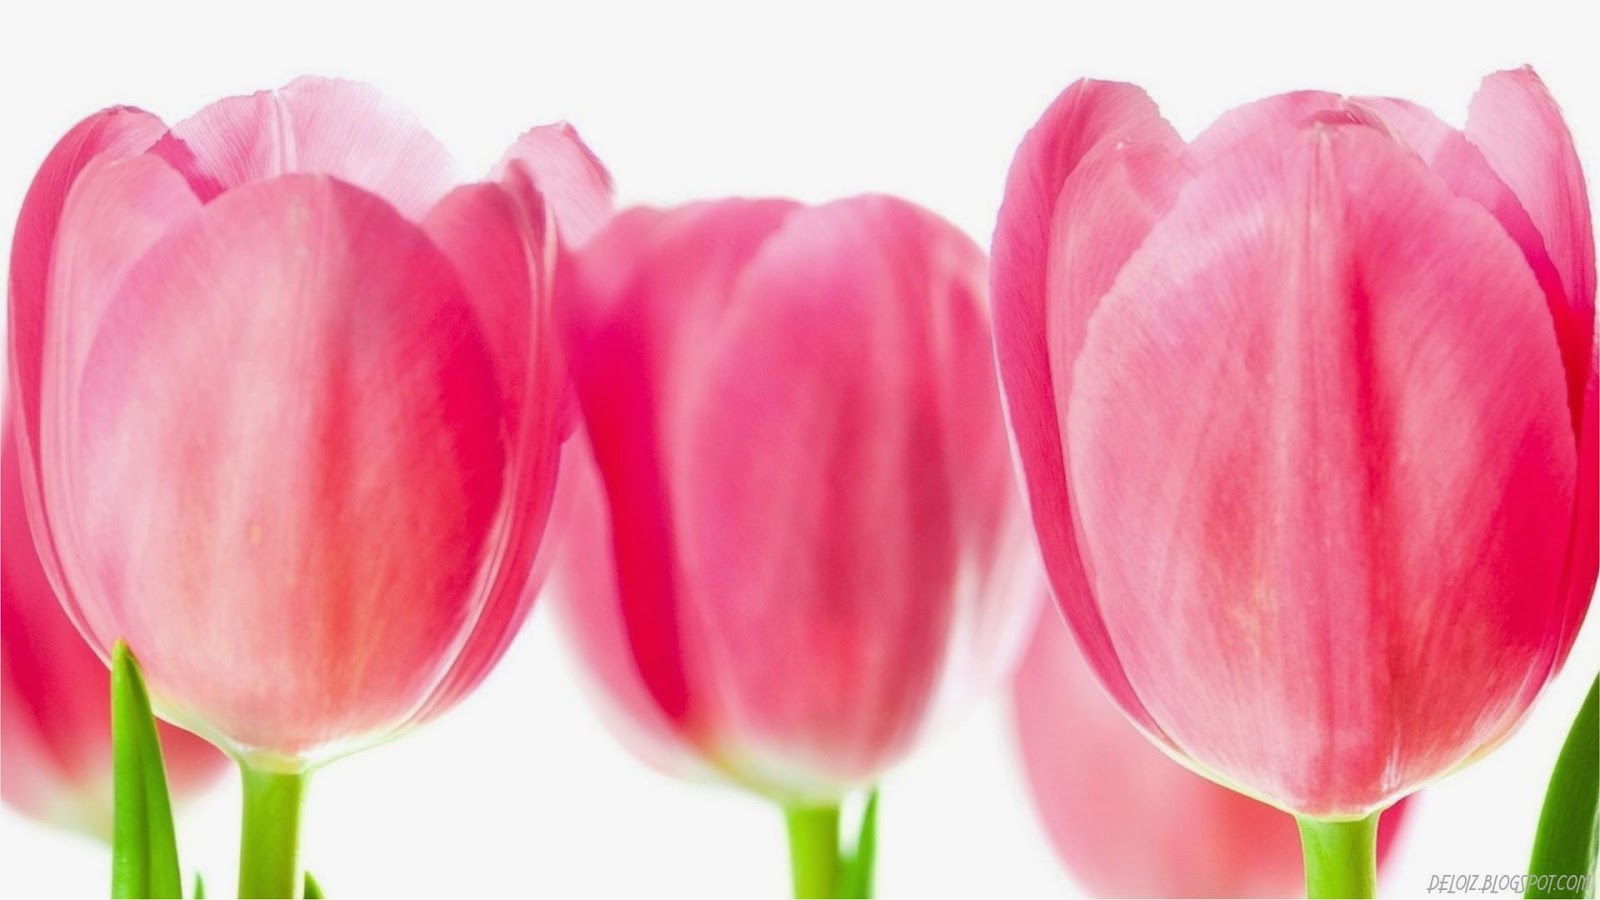 WALLPAPER ANDROID - IPHONE: Wallpaper Bunga Tulip Pink